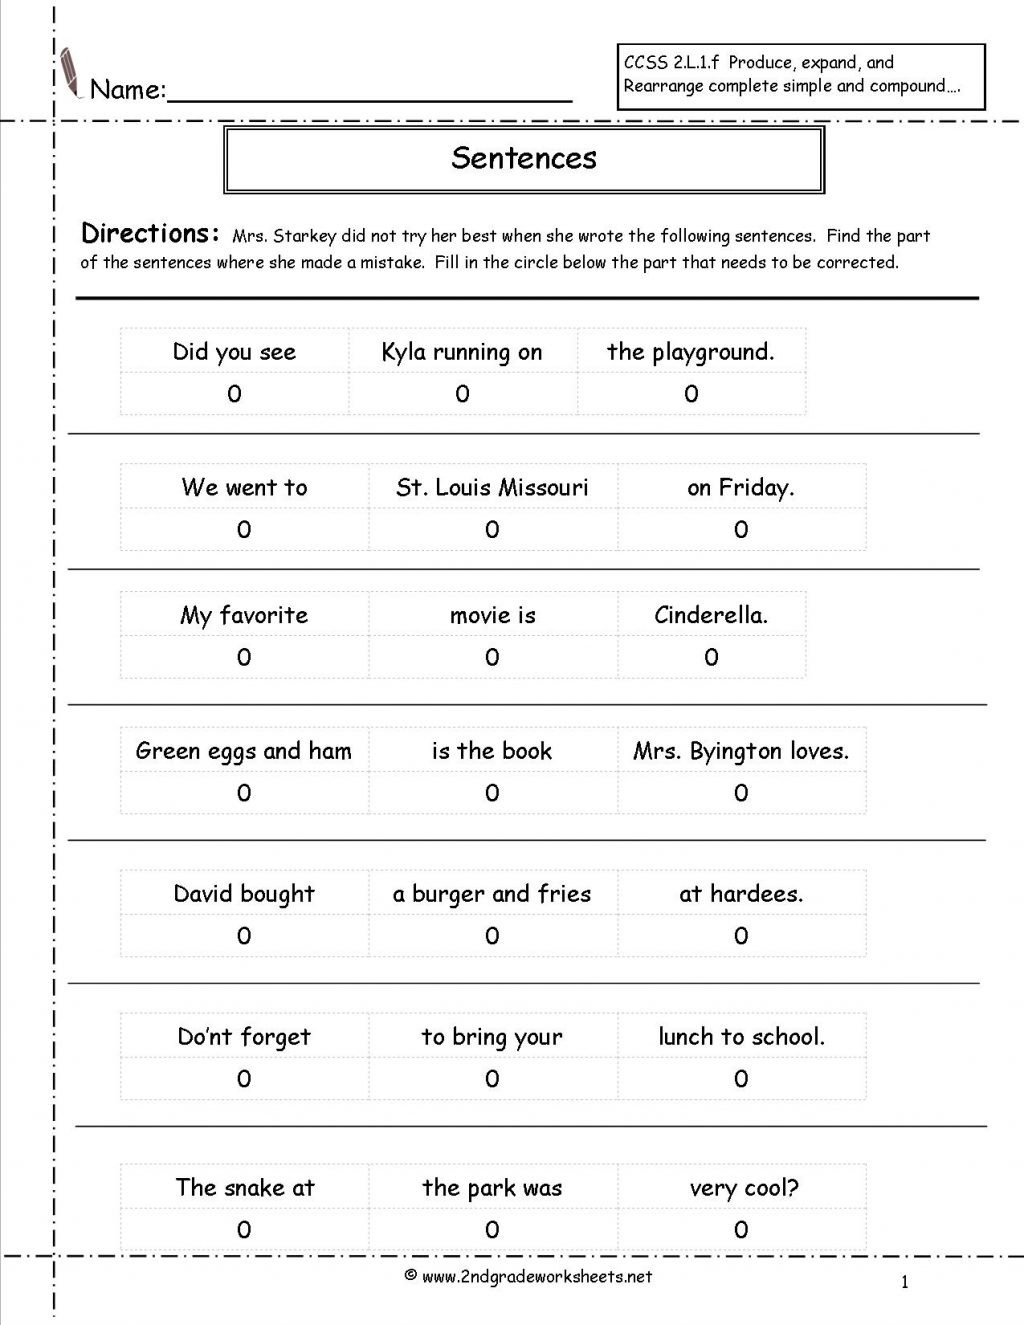 sentence-correction-worksheet-3rd-grade